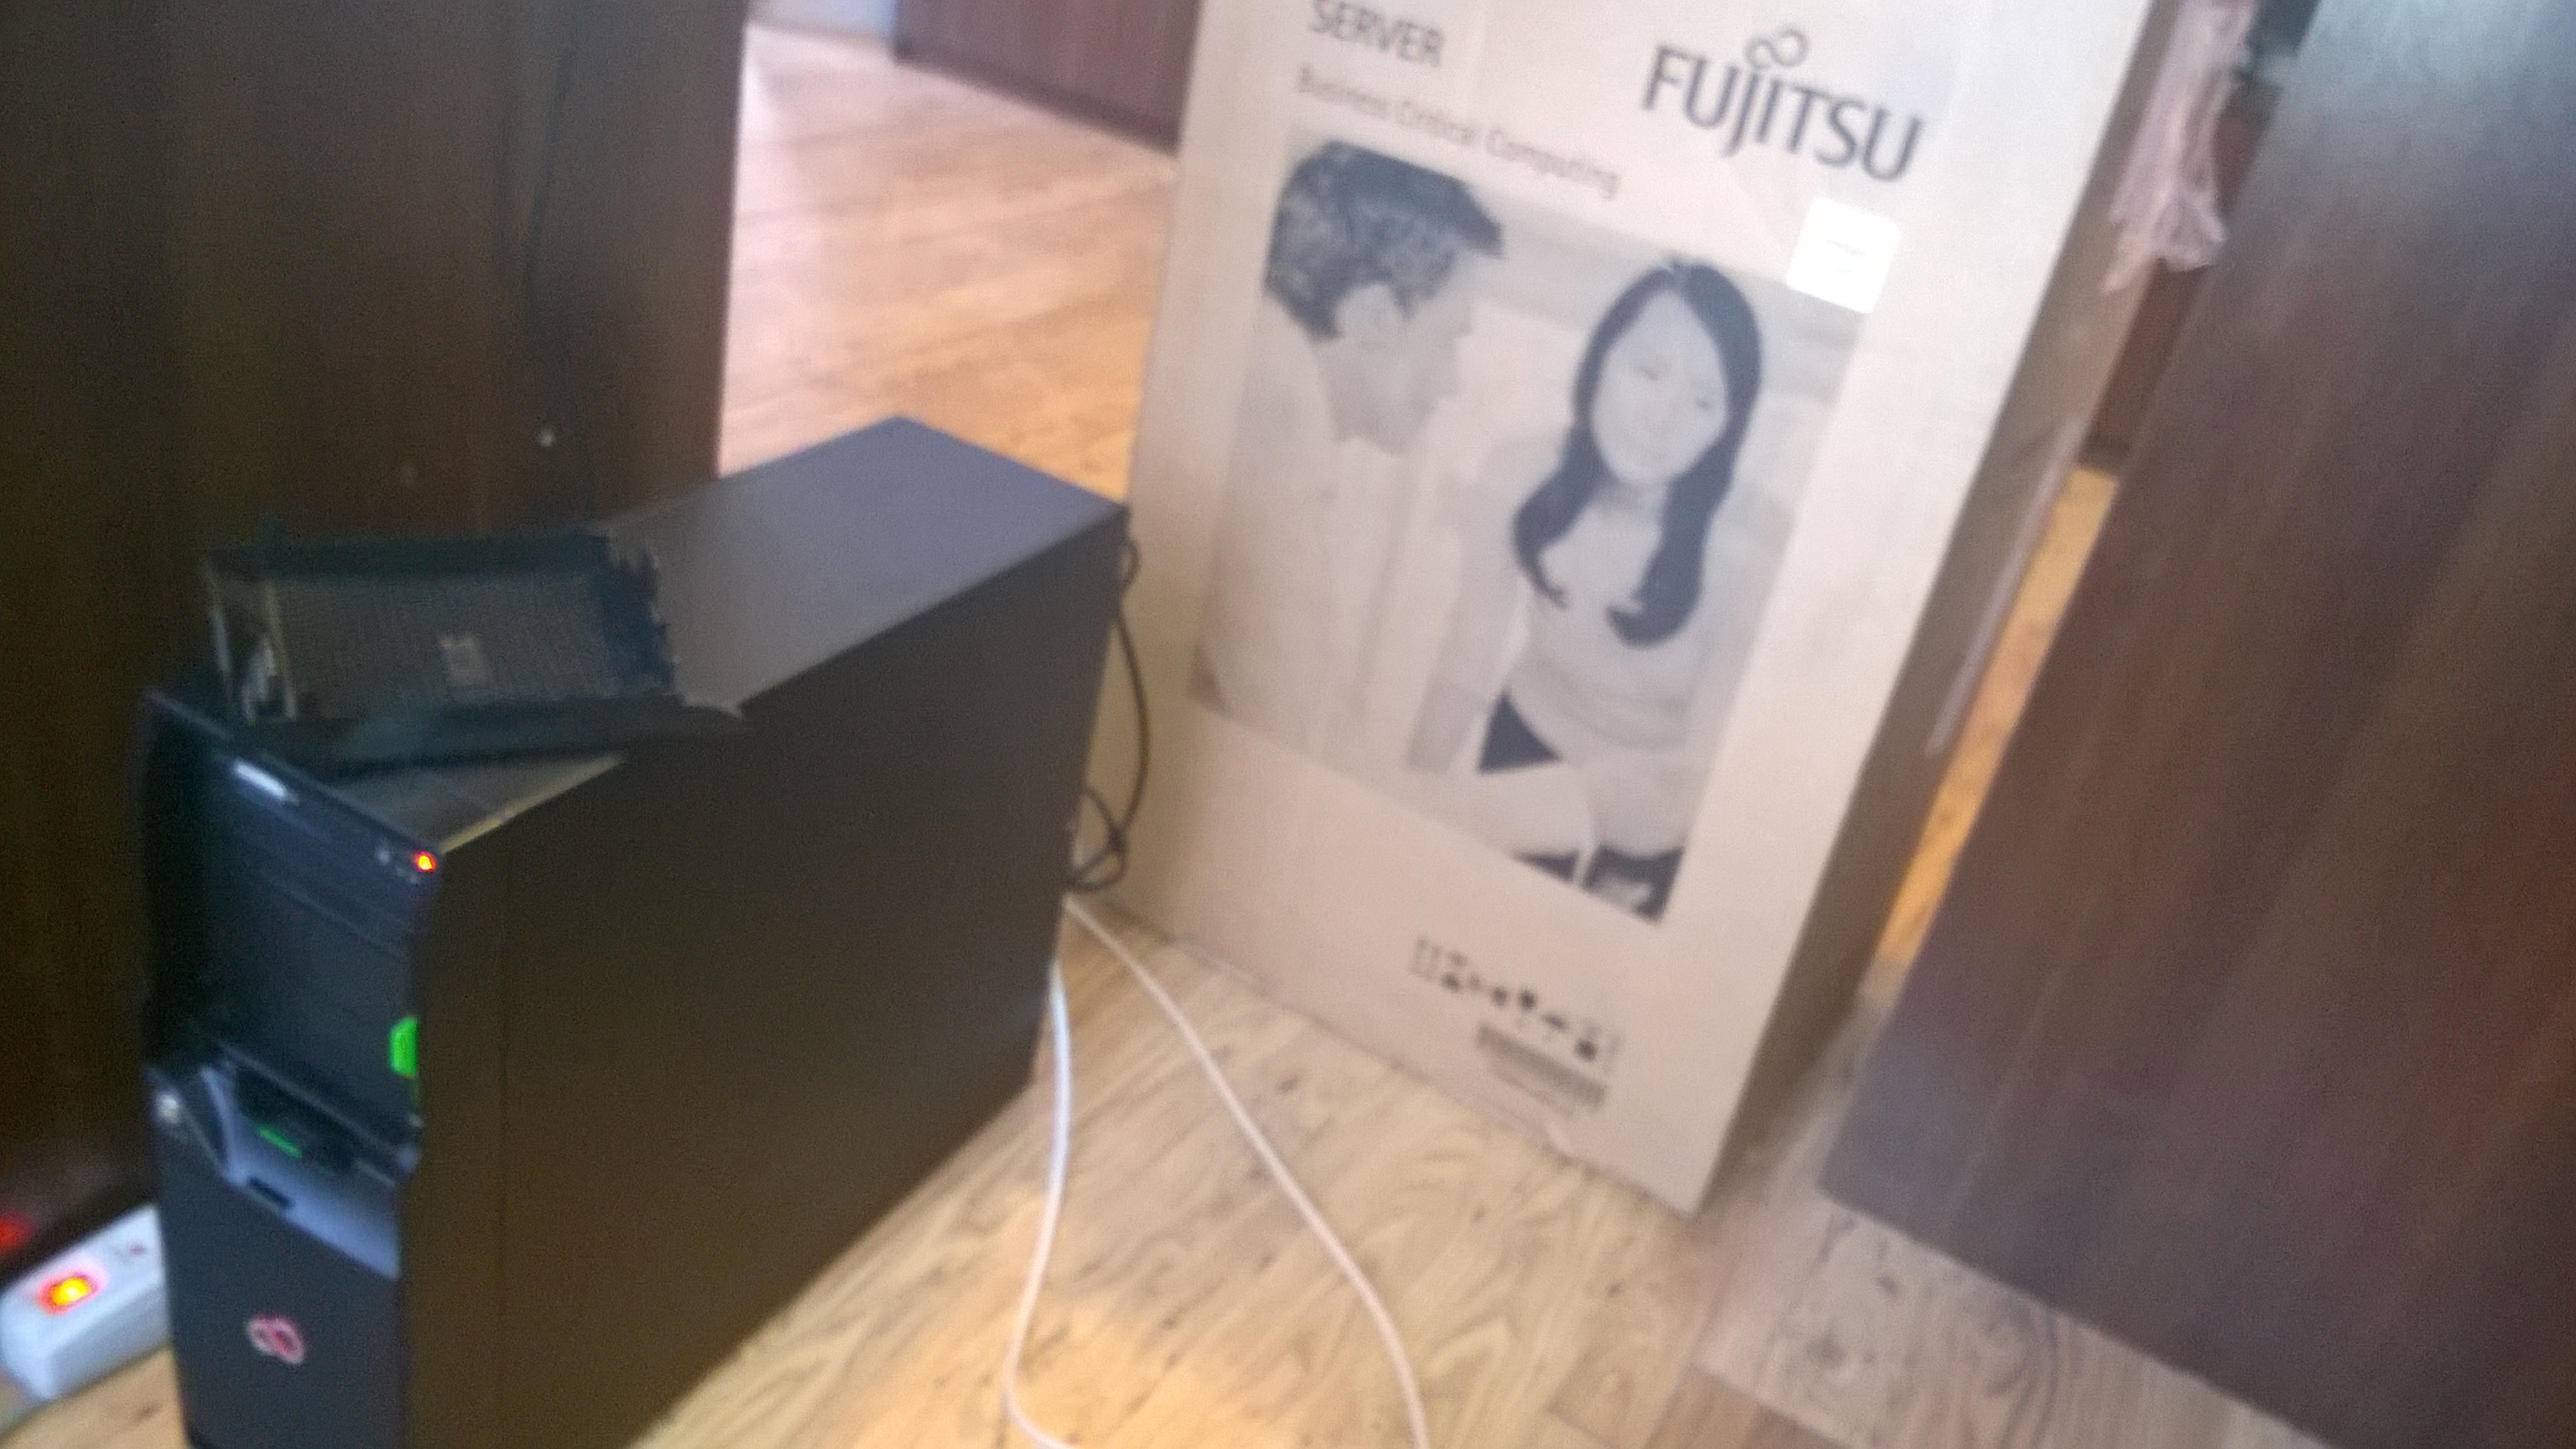 Instalacja konfiguracja Serwera Fujitsu Siemens firma produkcyjna